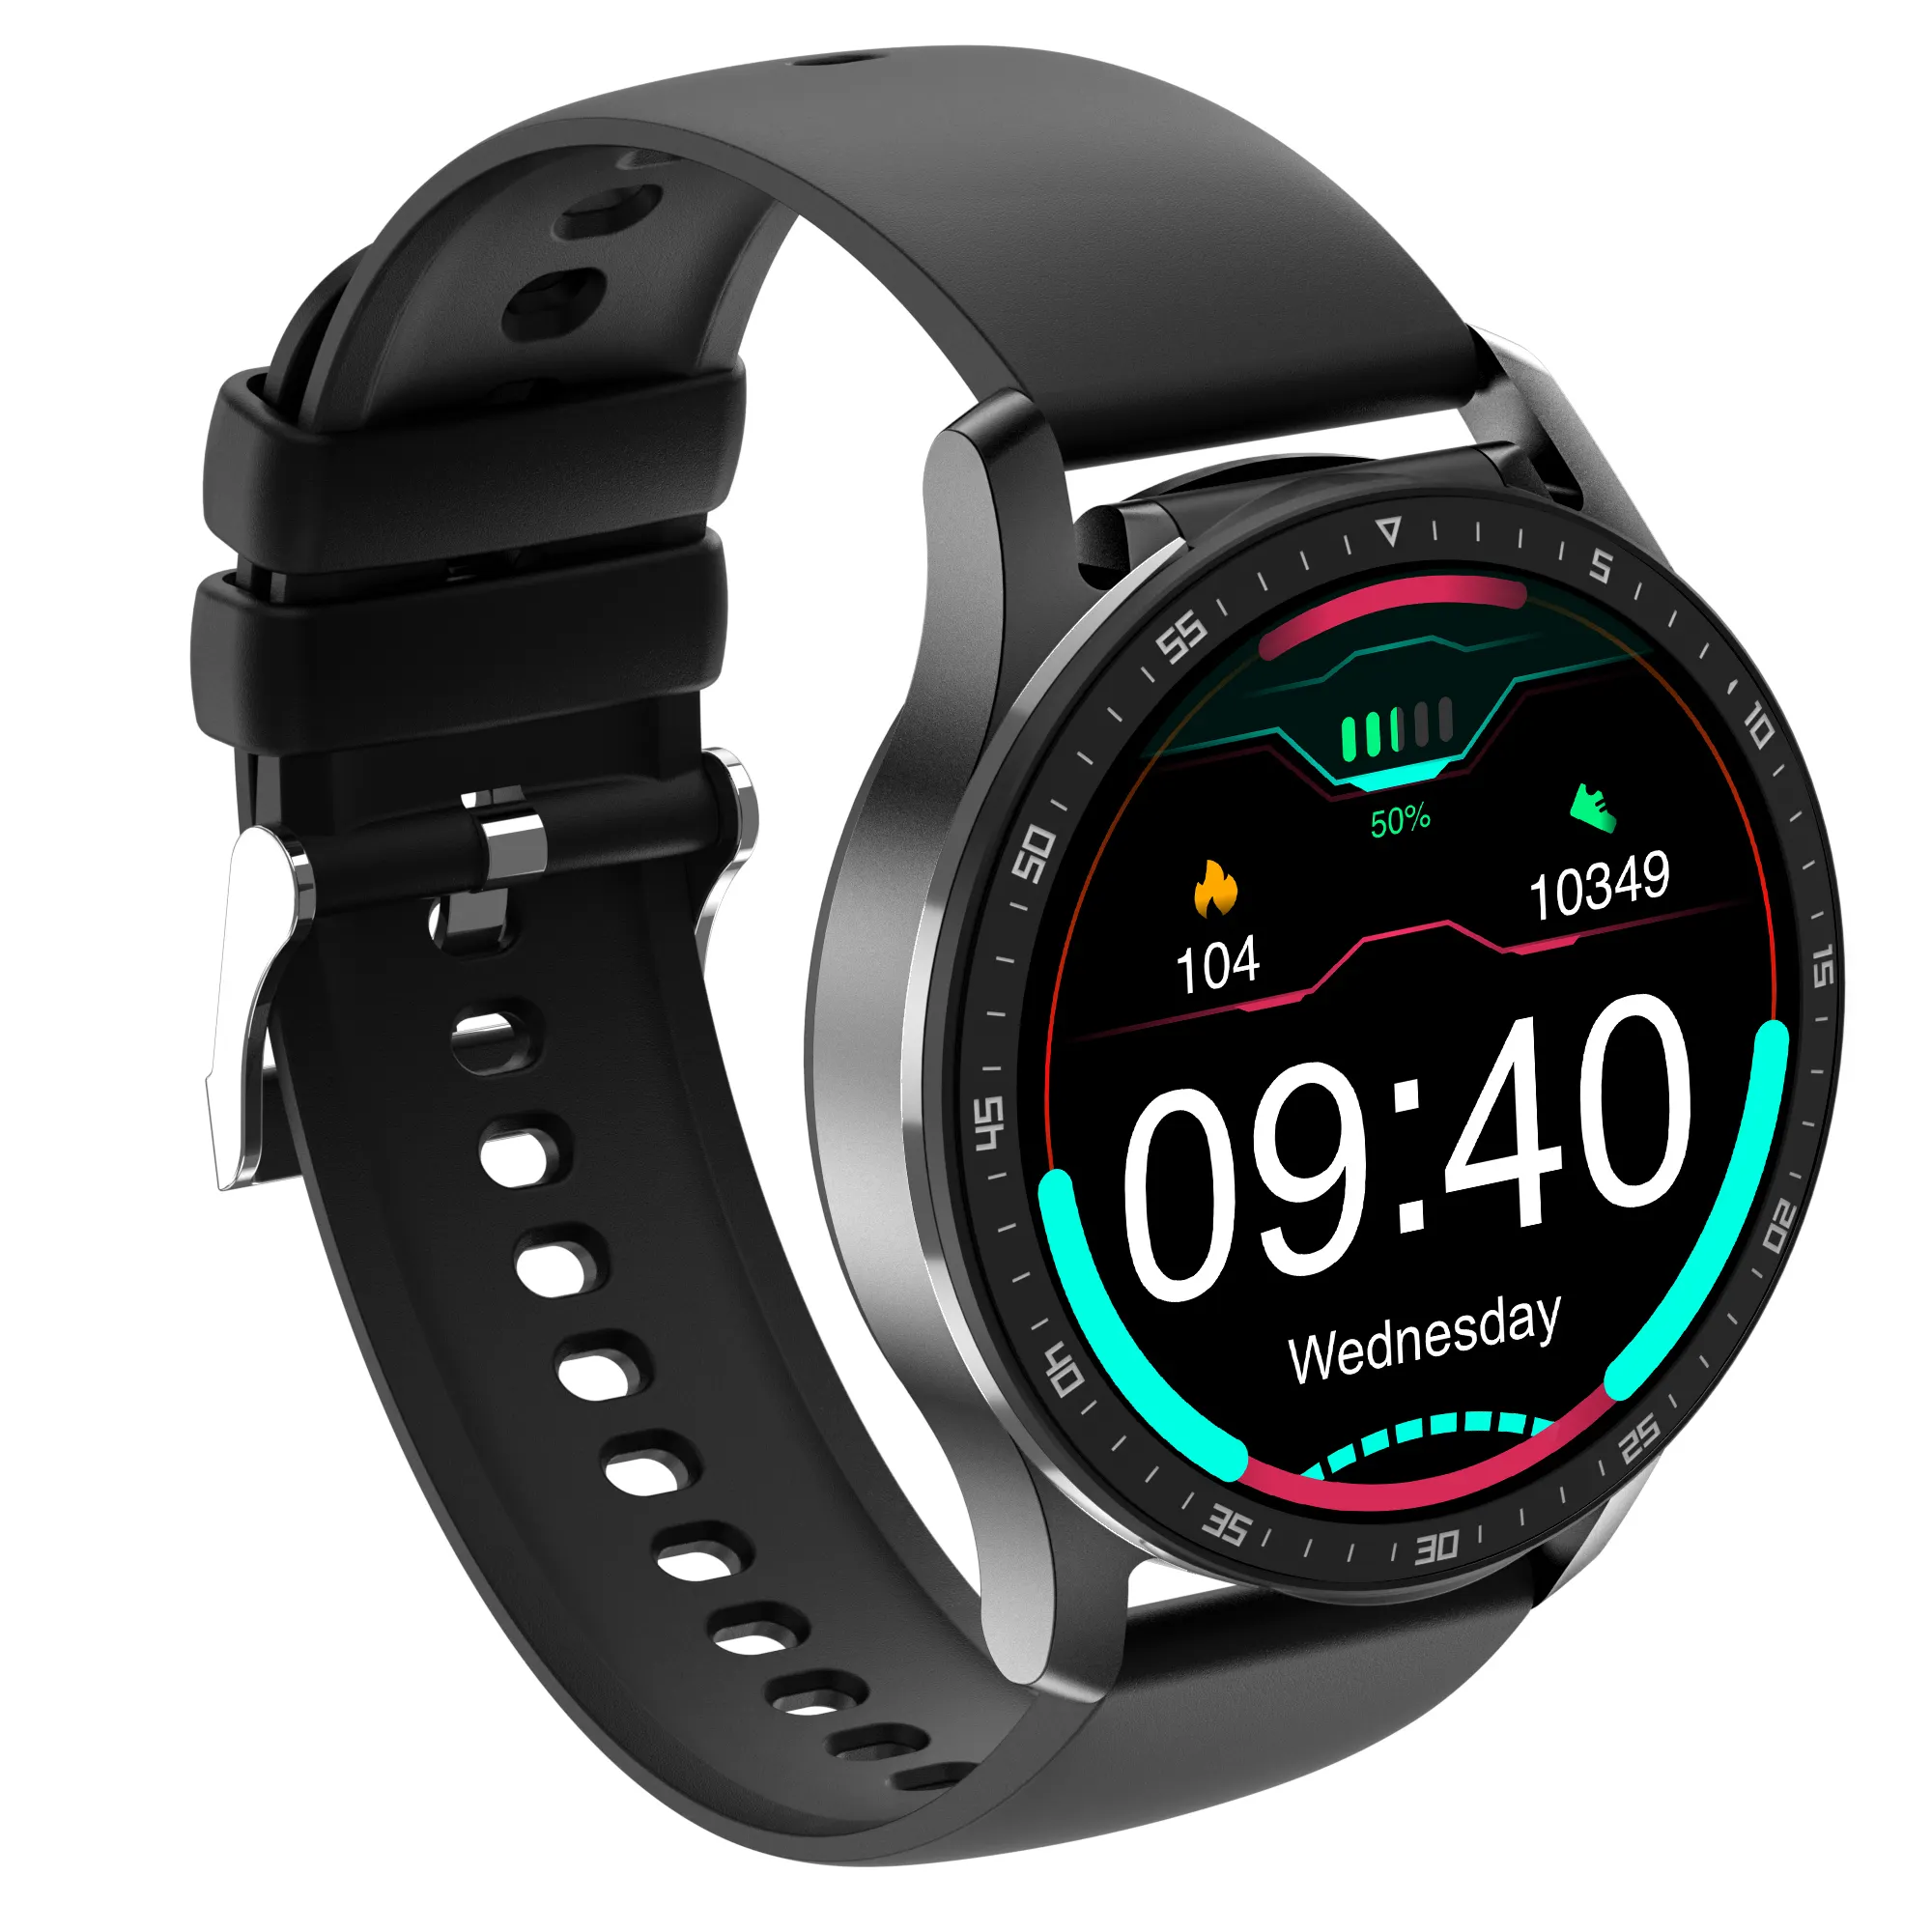 Herzfrequenz messer Smart Watch 2021 Blutdruck Sauerstoff Sport Smar Twatch Android IOS Mobile Wasserdichtes Gehäuse